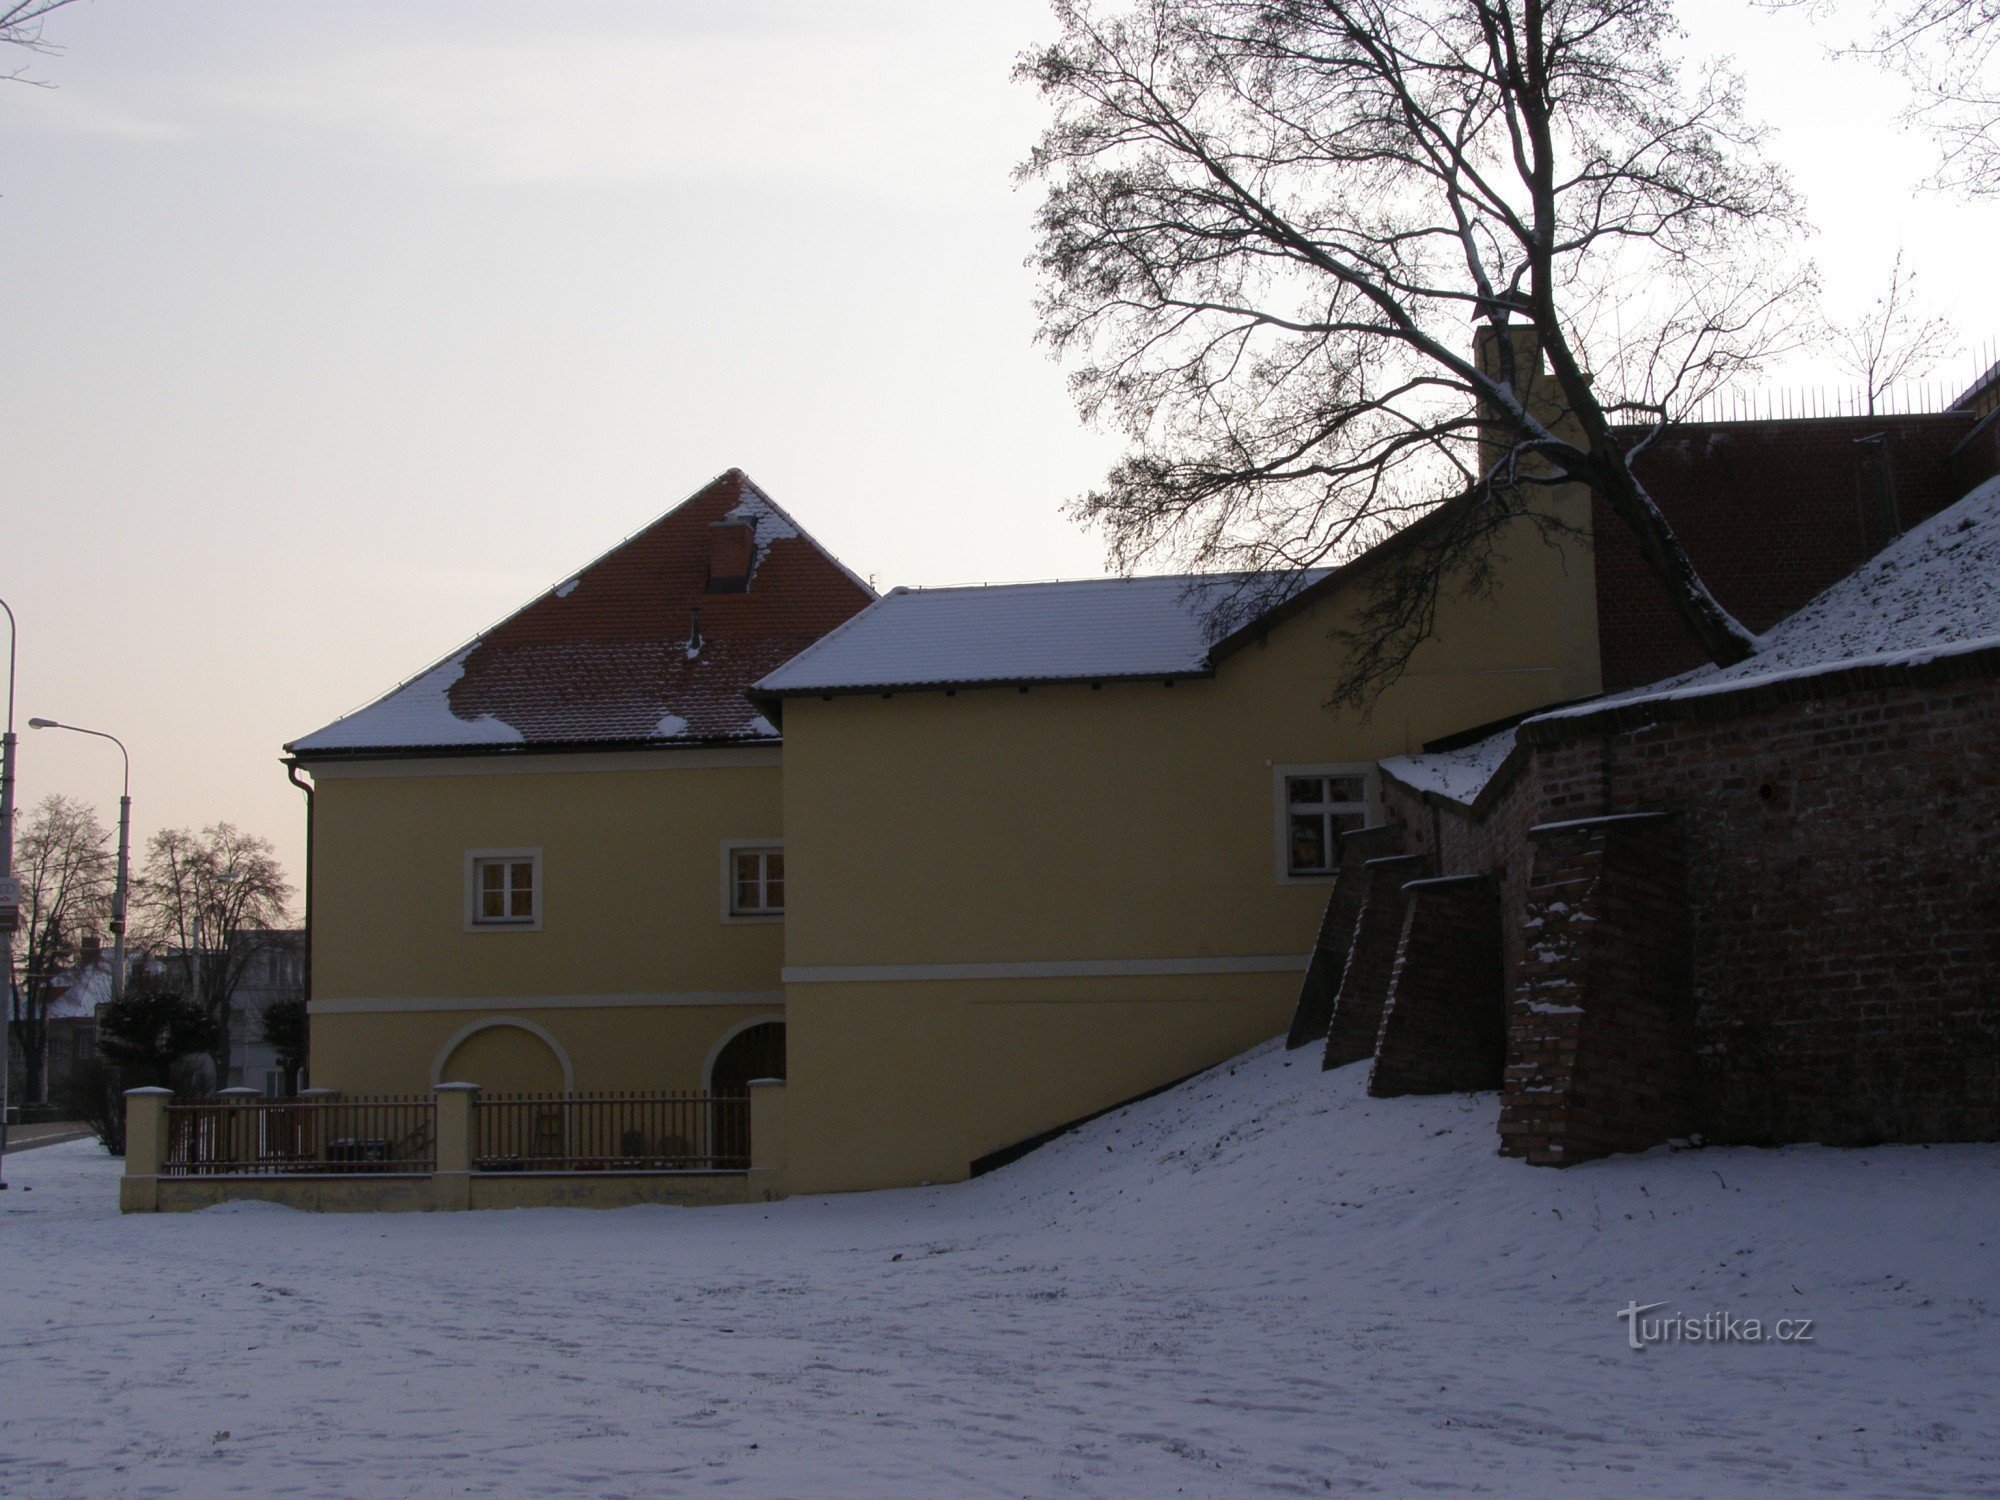 Φρούριο Hradec - υπολείμματα οχυρώσεων - πρώην μηχανολογικό στρατηγείο φρουρίου